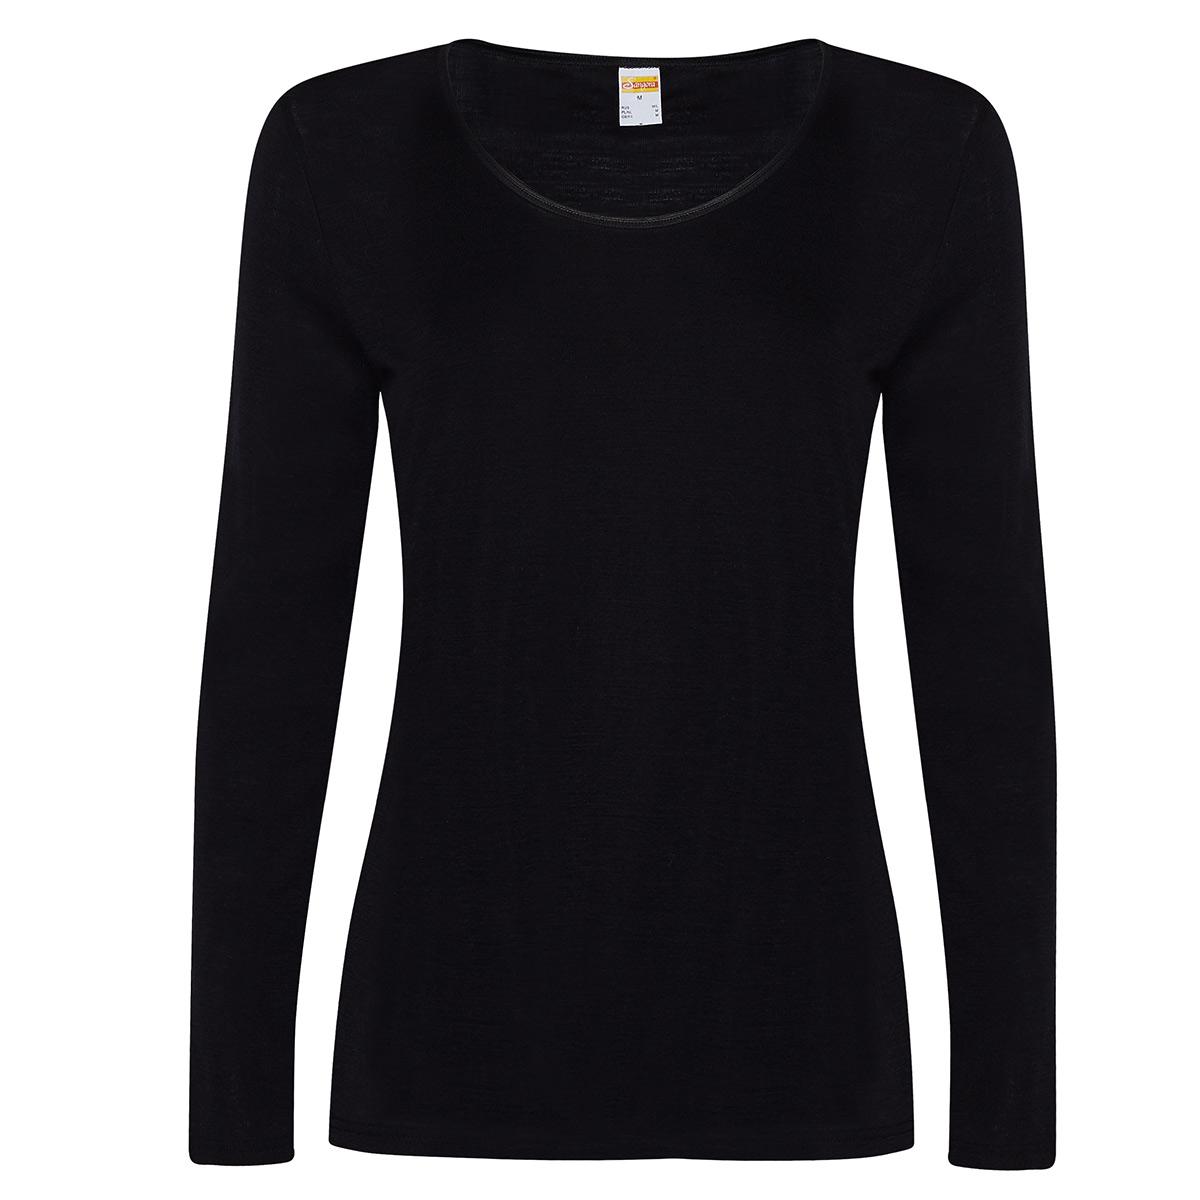 Susa Langarm-Shirt Modell Sangora in schwarz